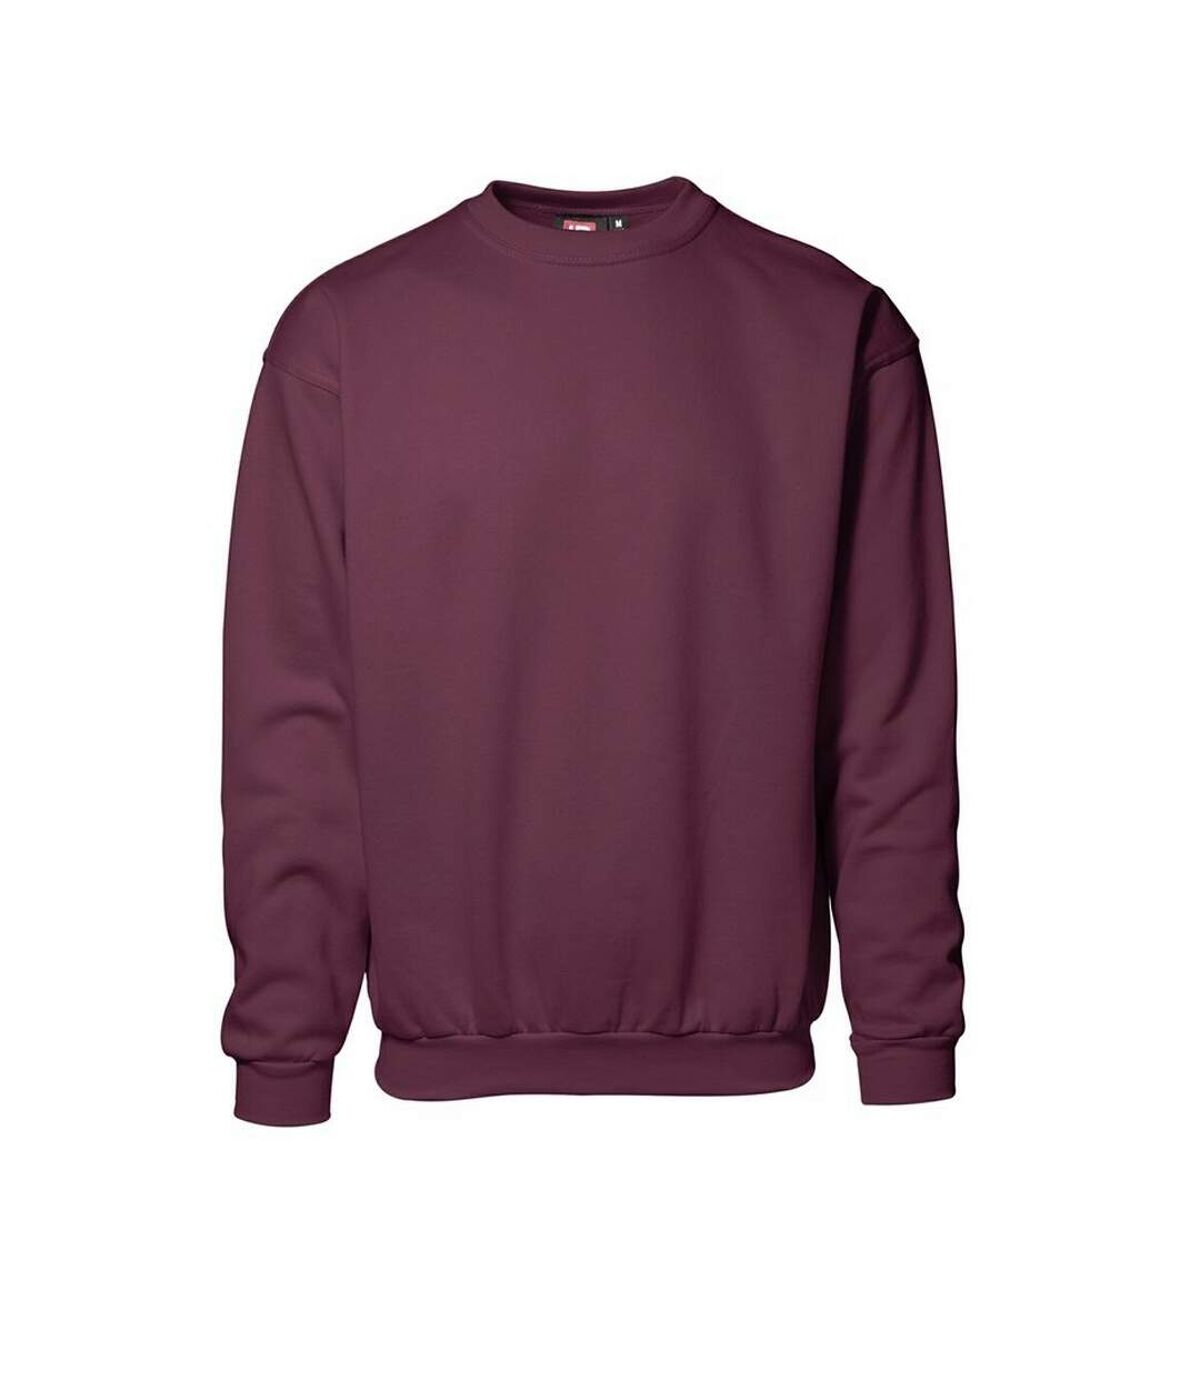 ID Unisex Classic Round Neck Sweatshirt (Bordeaux) - UTID275